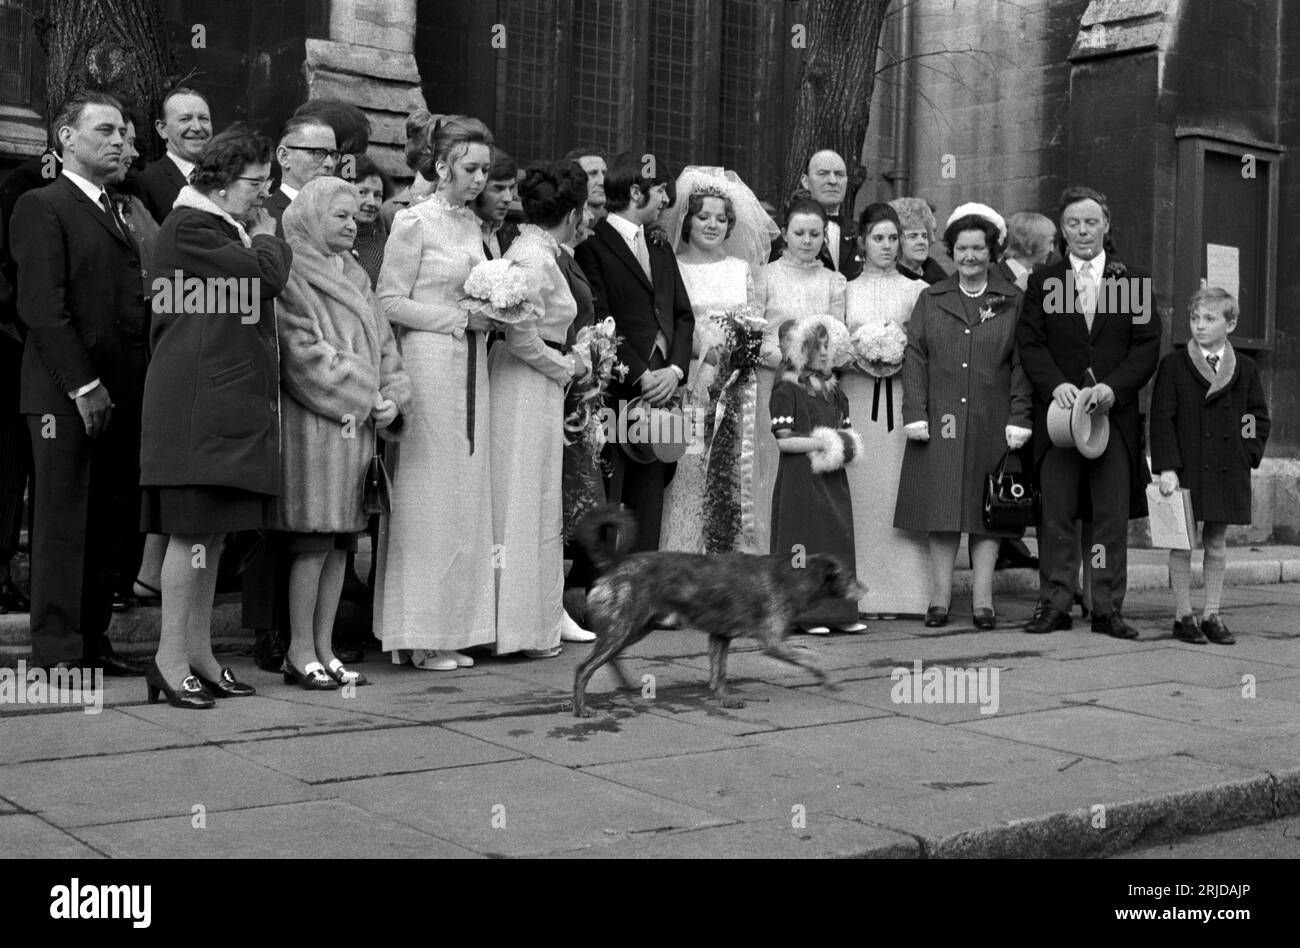 Groupe de mariage des années 1970 sur le point d'être photographié, attendant qu'un chien errant passe devant la photo officielle du couple heureux l'occasion est prise. Debout à l'extérieur de l'église où le mariage a eu lieu. Notting Hill, Londres, Angleterre 1970 Royaume-Uni HOMER SYKES Banque D'Images